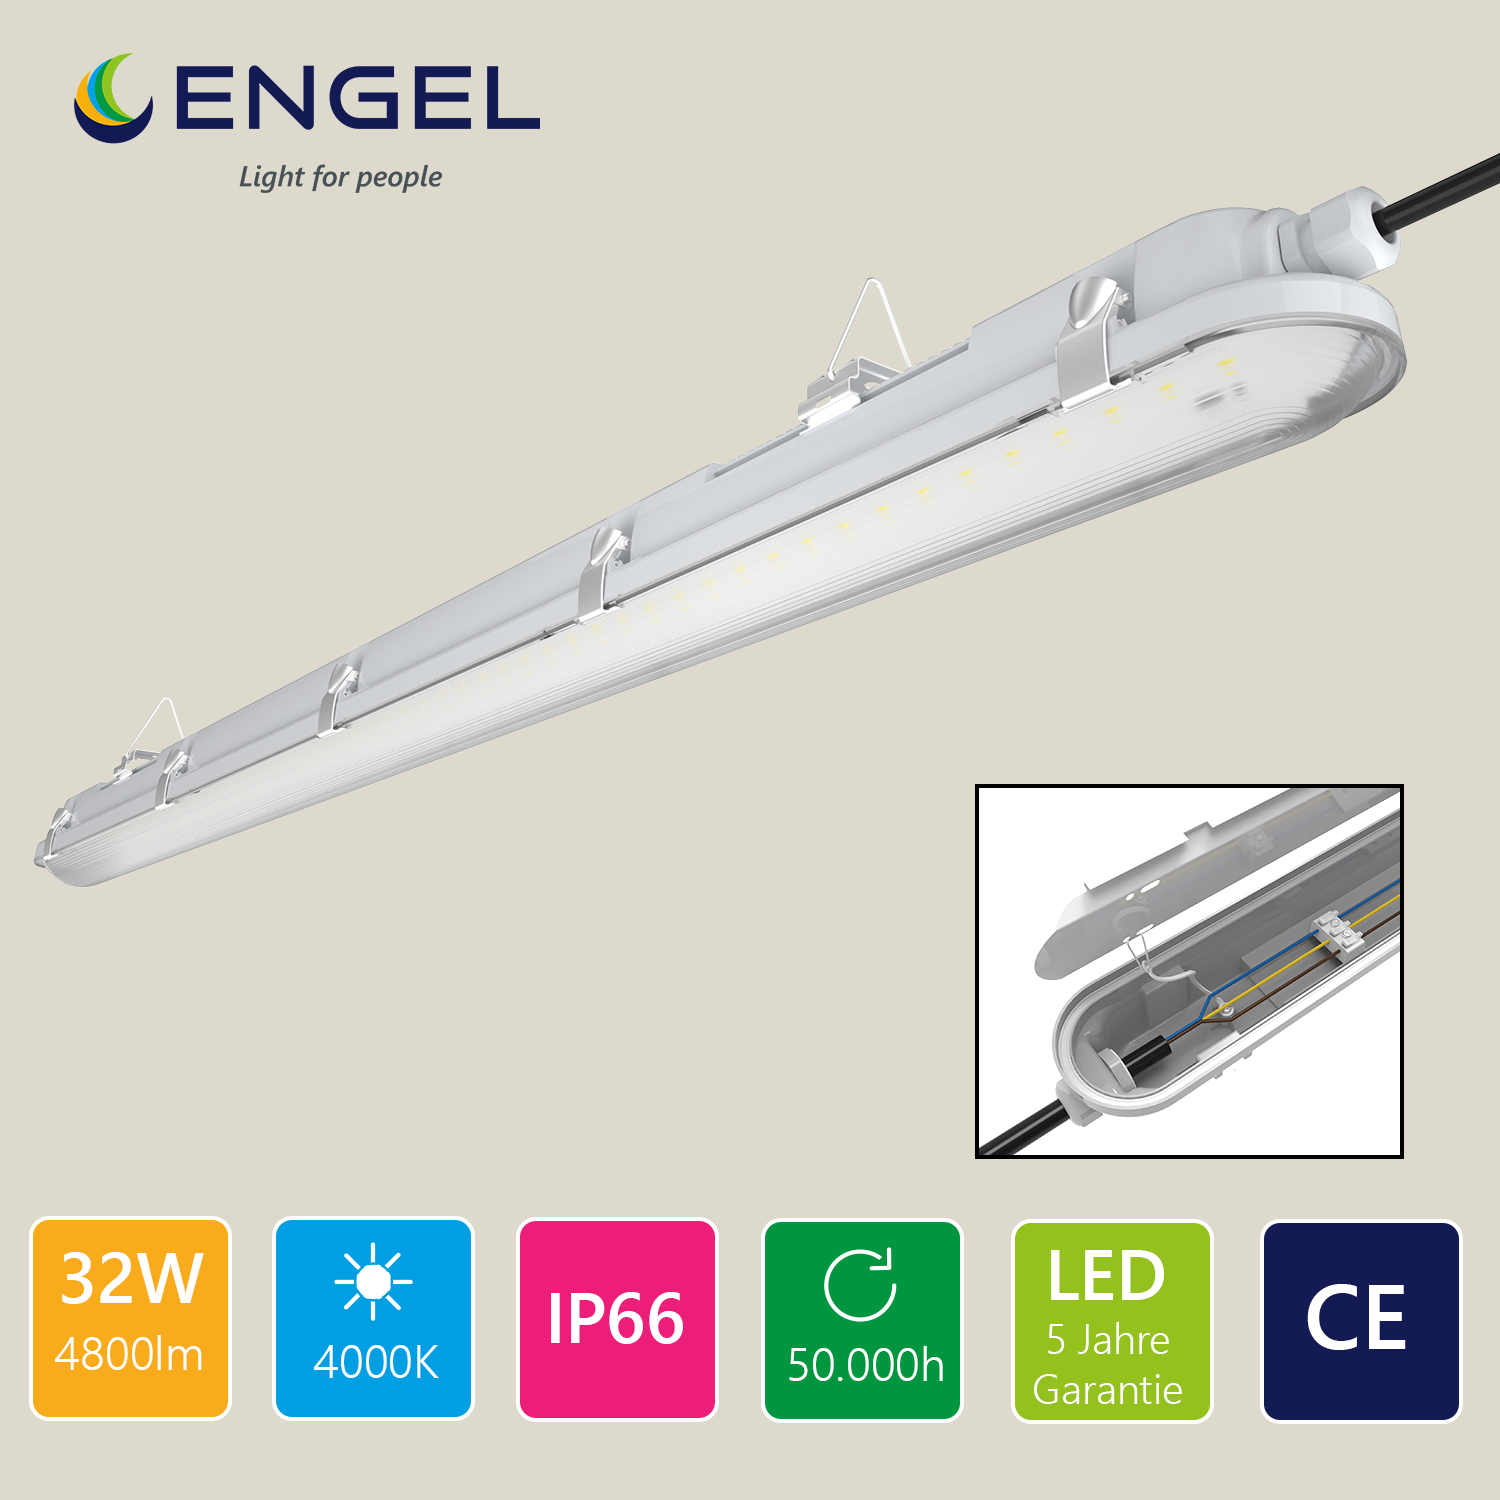 Engel LED Feuchtraumleuchte 60-150cm IP66 Effizient, Gleichmäßiges Licht mit 5 Jahren Garantie